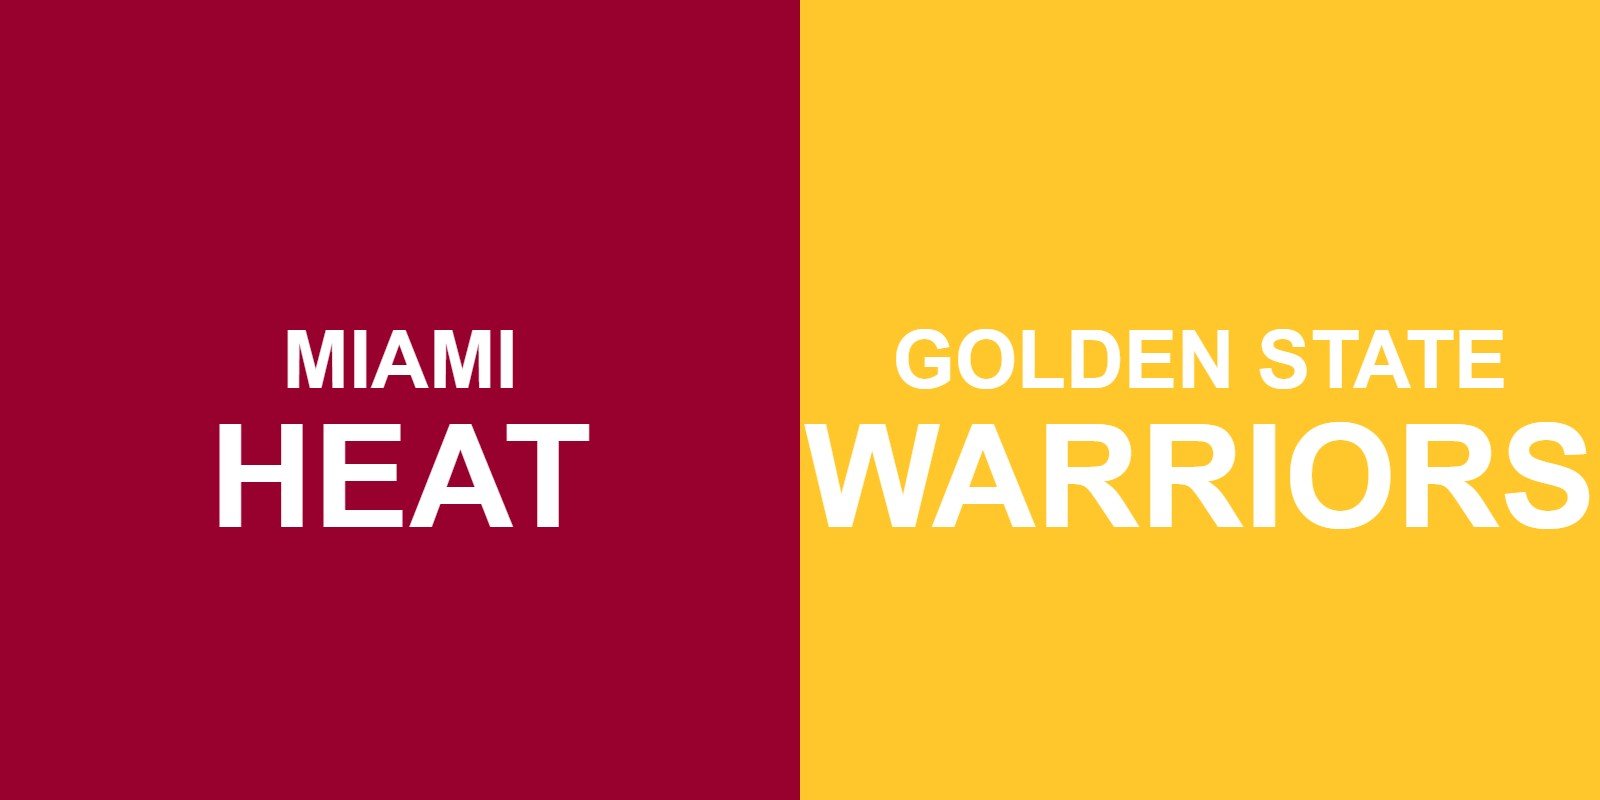 Heat vs Warriors